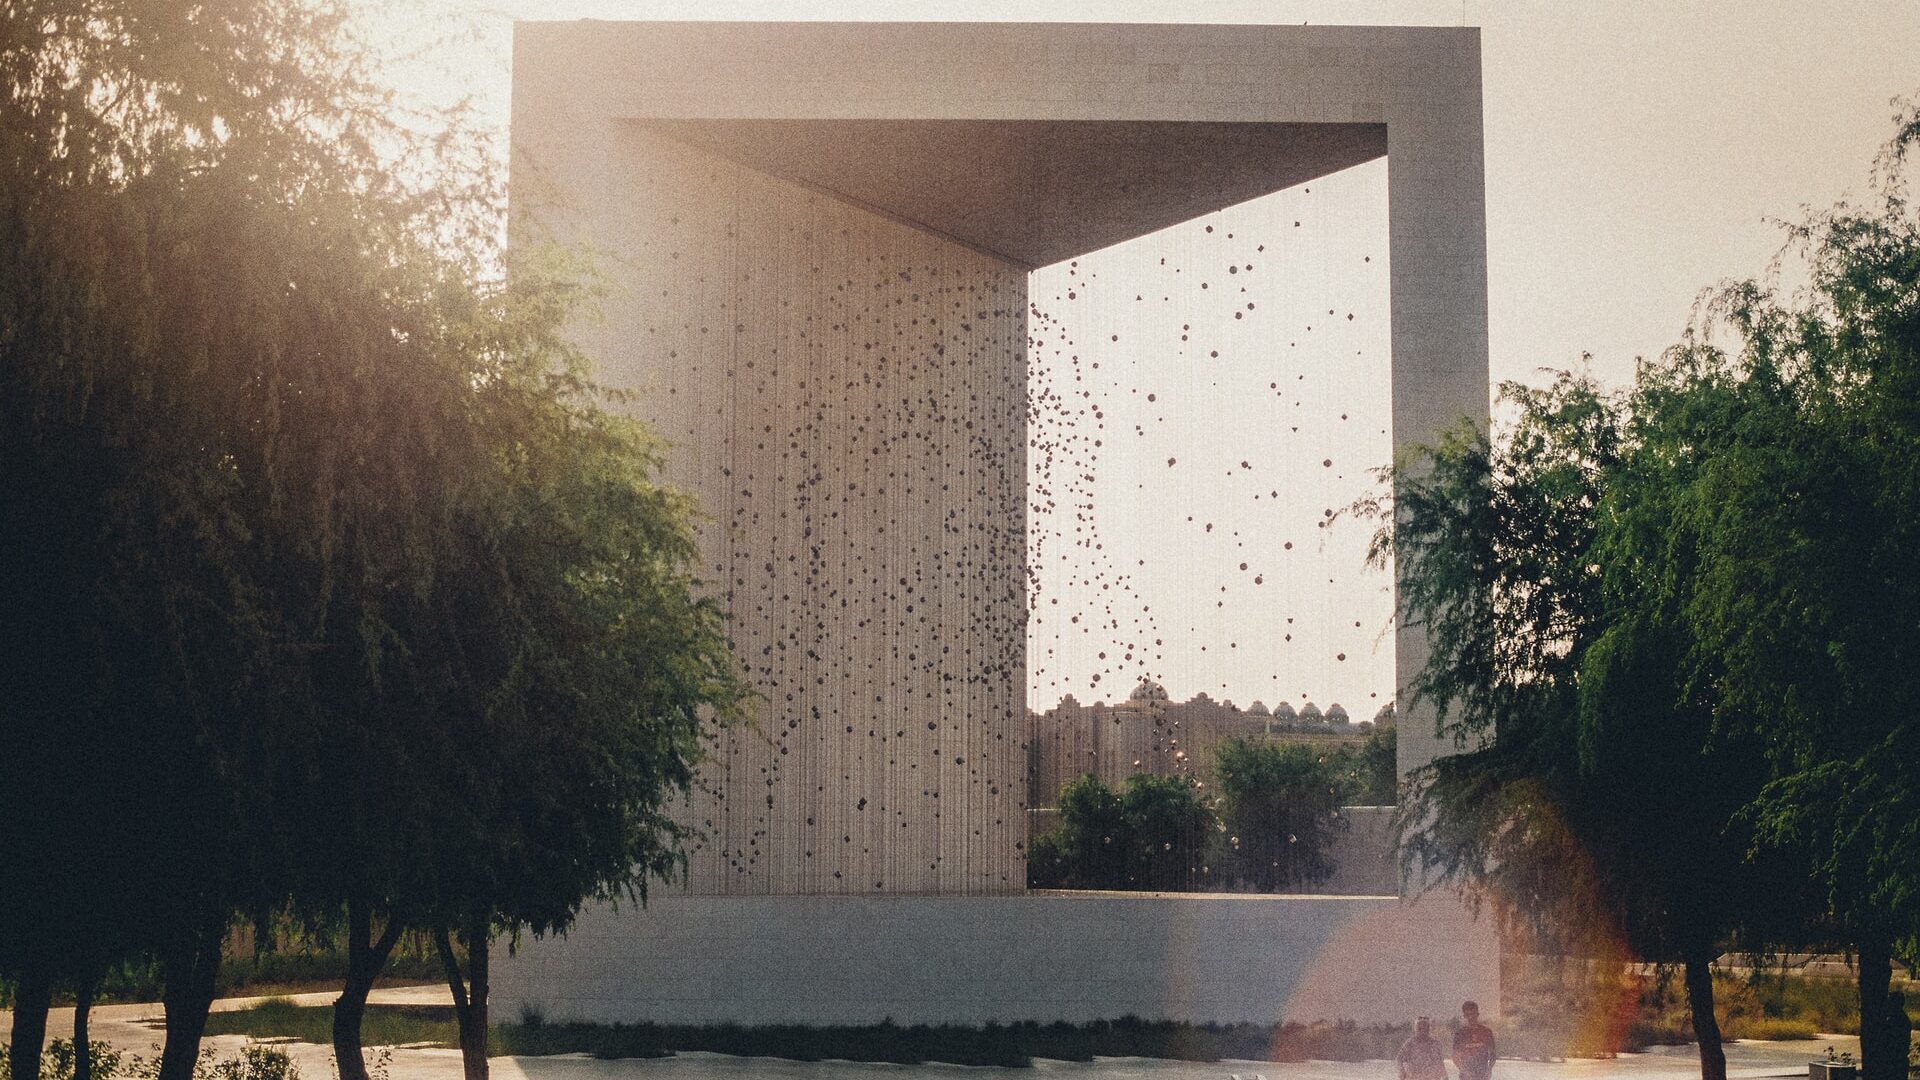 Abu Dhabi Founders Memorial